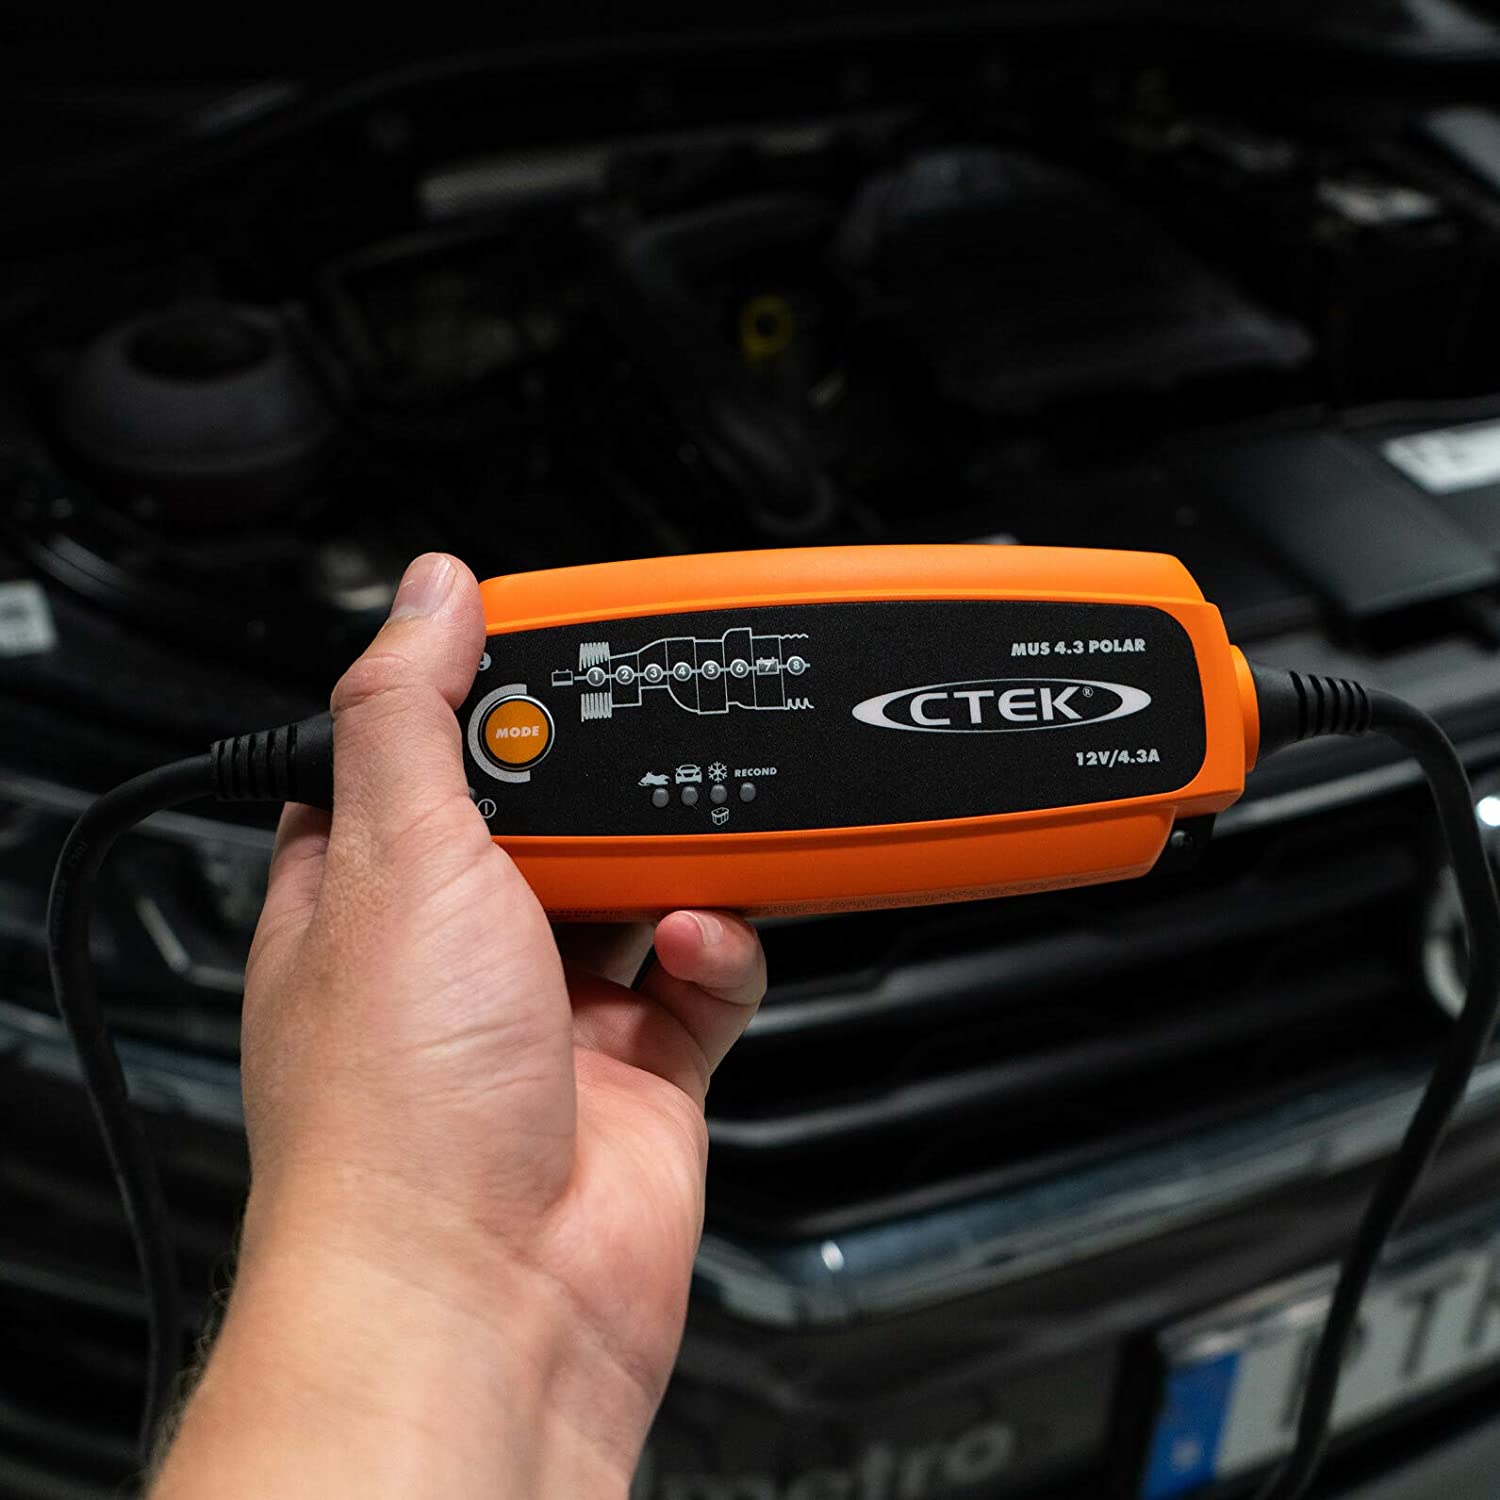 CTEK MXS 5.0 56-305 Batterie Ladegerät Batterieladegerät 12V 5A für Au –  Kummert Business eCommerce